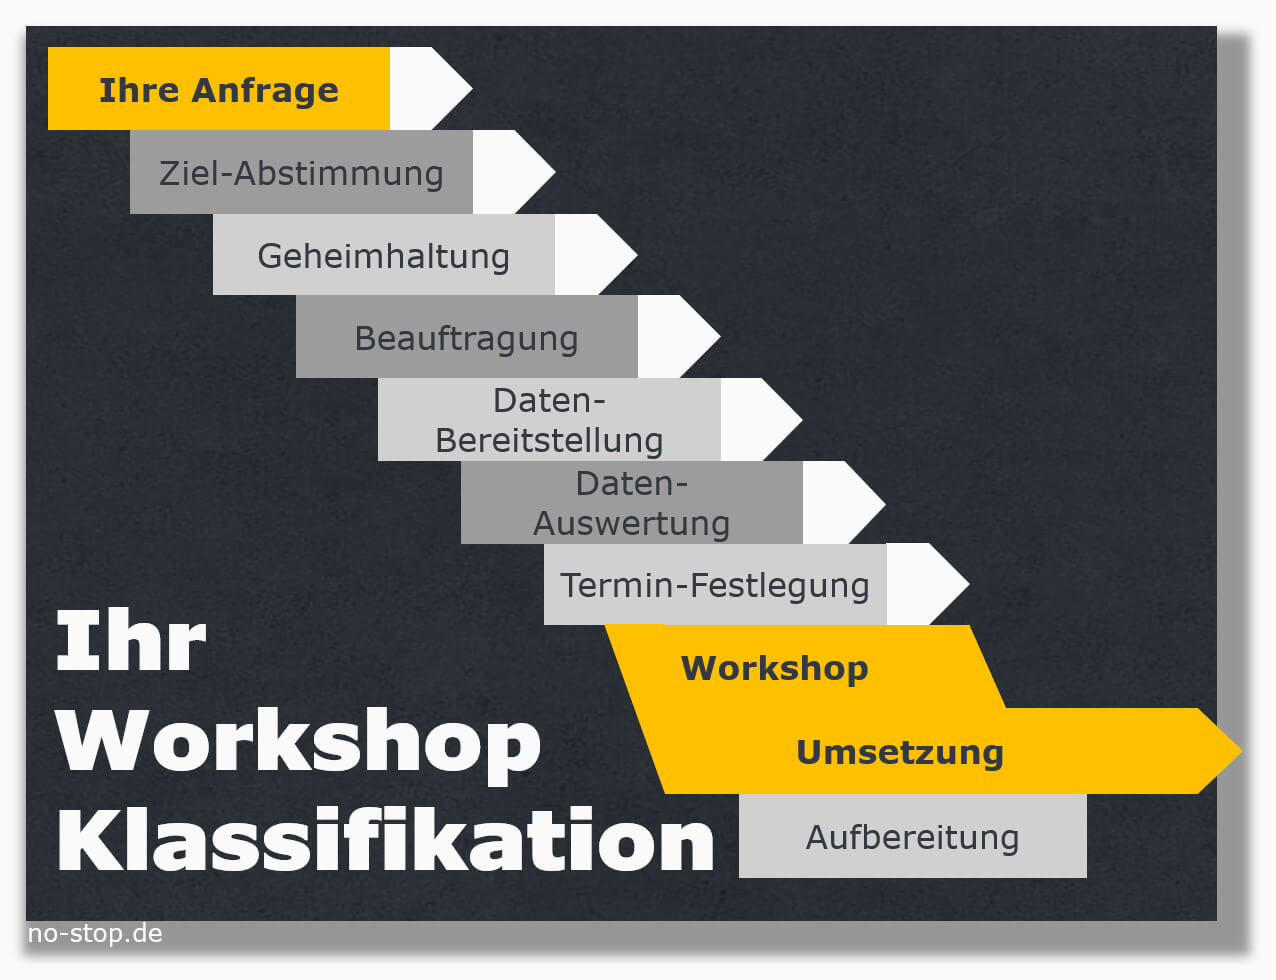 Ablaufplan zum Workshop Ersatzteil-Klassifikation